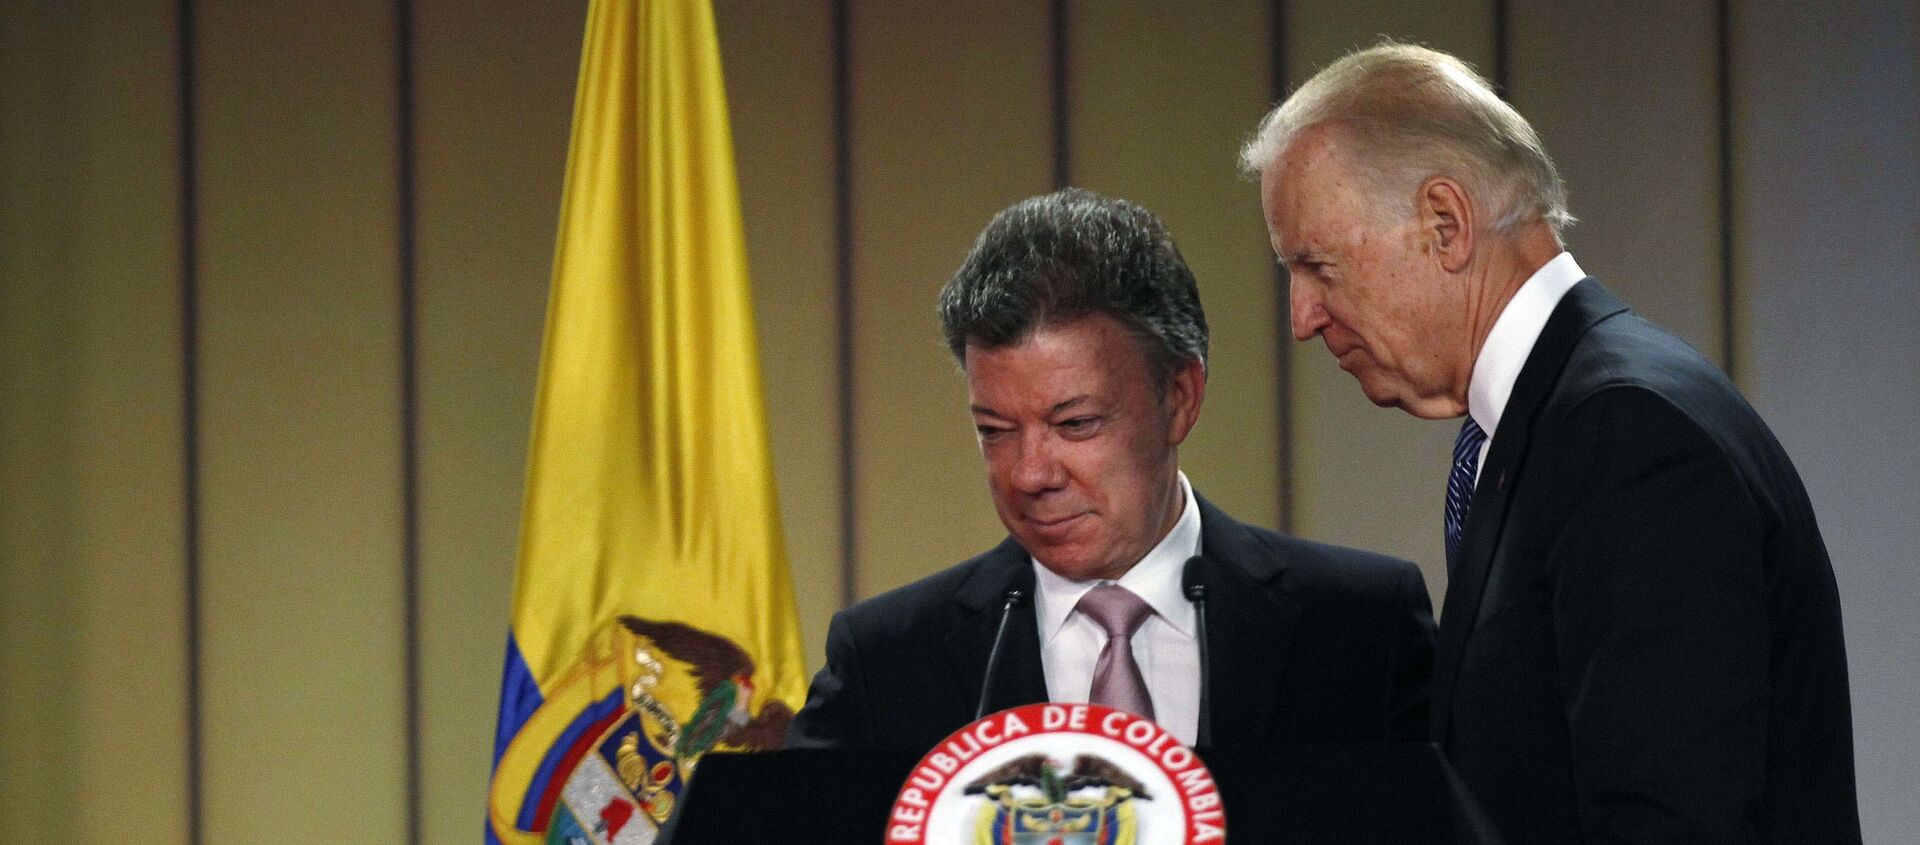 El expresidente colombiano Juan Manuel Santos junto a Joe Biden durante su visita a Colombia en 2016 - Sputnik Mundo, 1920, 29.10.2020